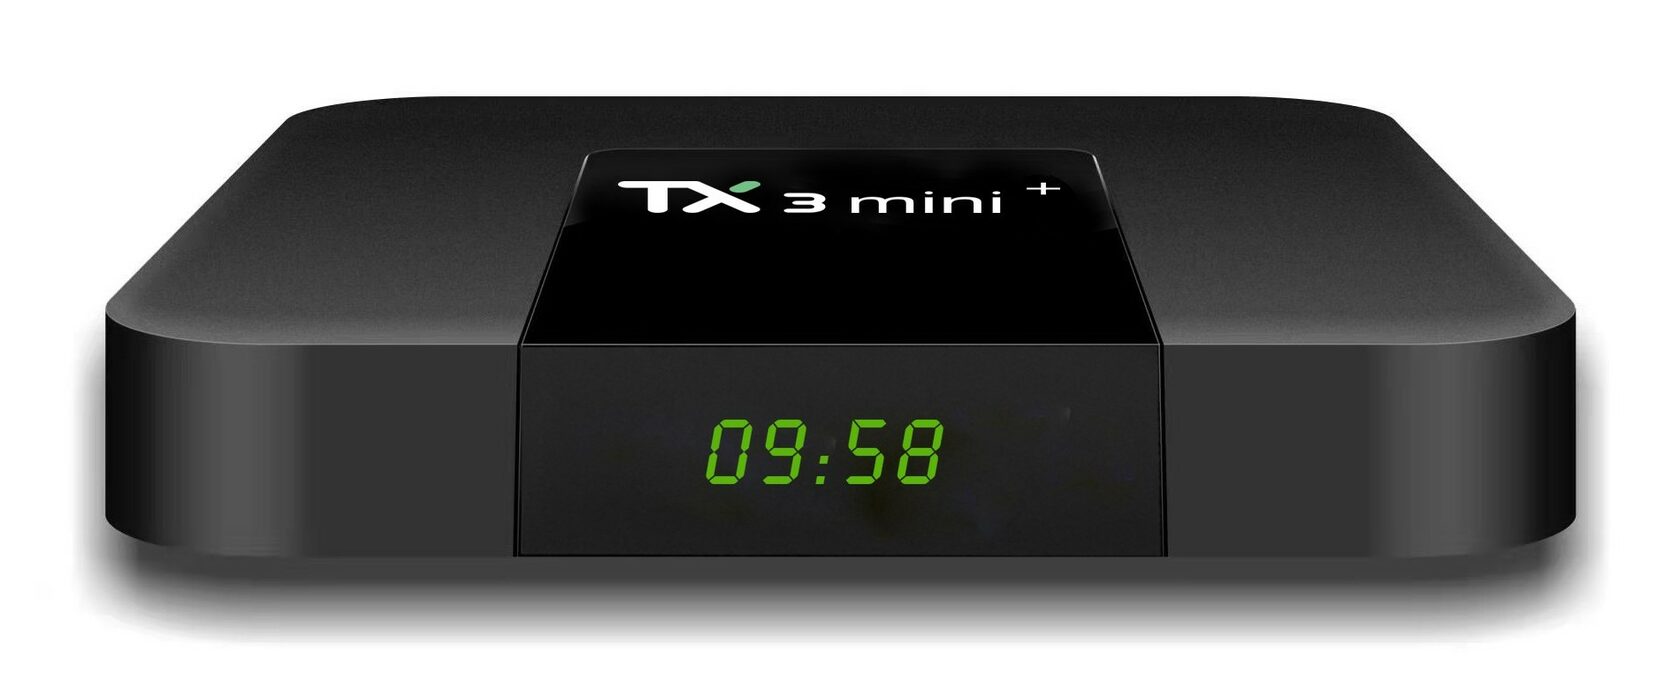 Тв приставки для телевизора обзор. Медиаплеер Tanix tx3 Mini 2/16gb. Медиаплеер Tanix tx3 Mini 1/8gb. Приставка тв3 Mini 2\16. Smart TV приставка tx3 Mini 2/16.